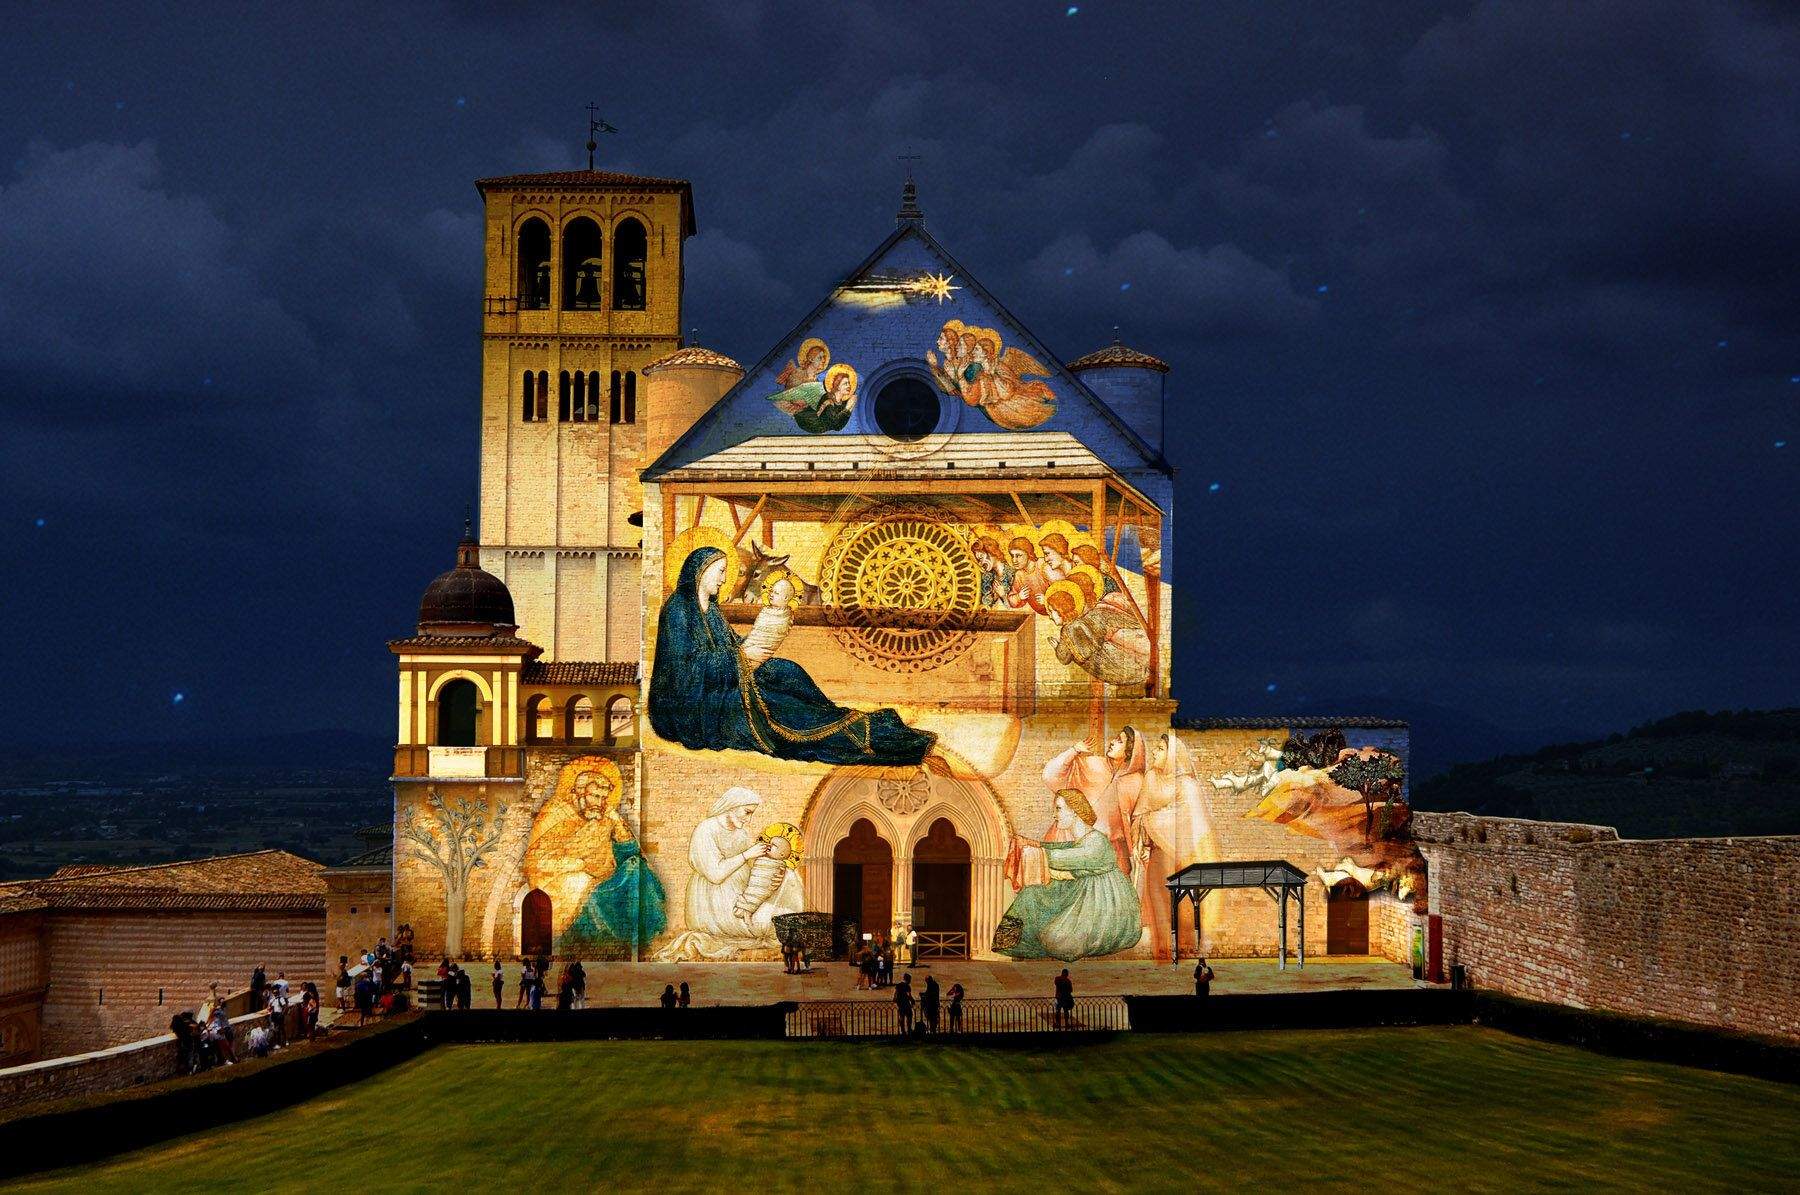 Assisi, per Natale videoproiezioni degli affreschi di Giotto sulla facciata della Basilica